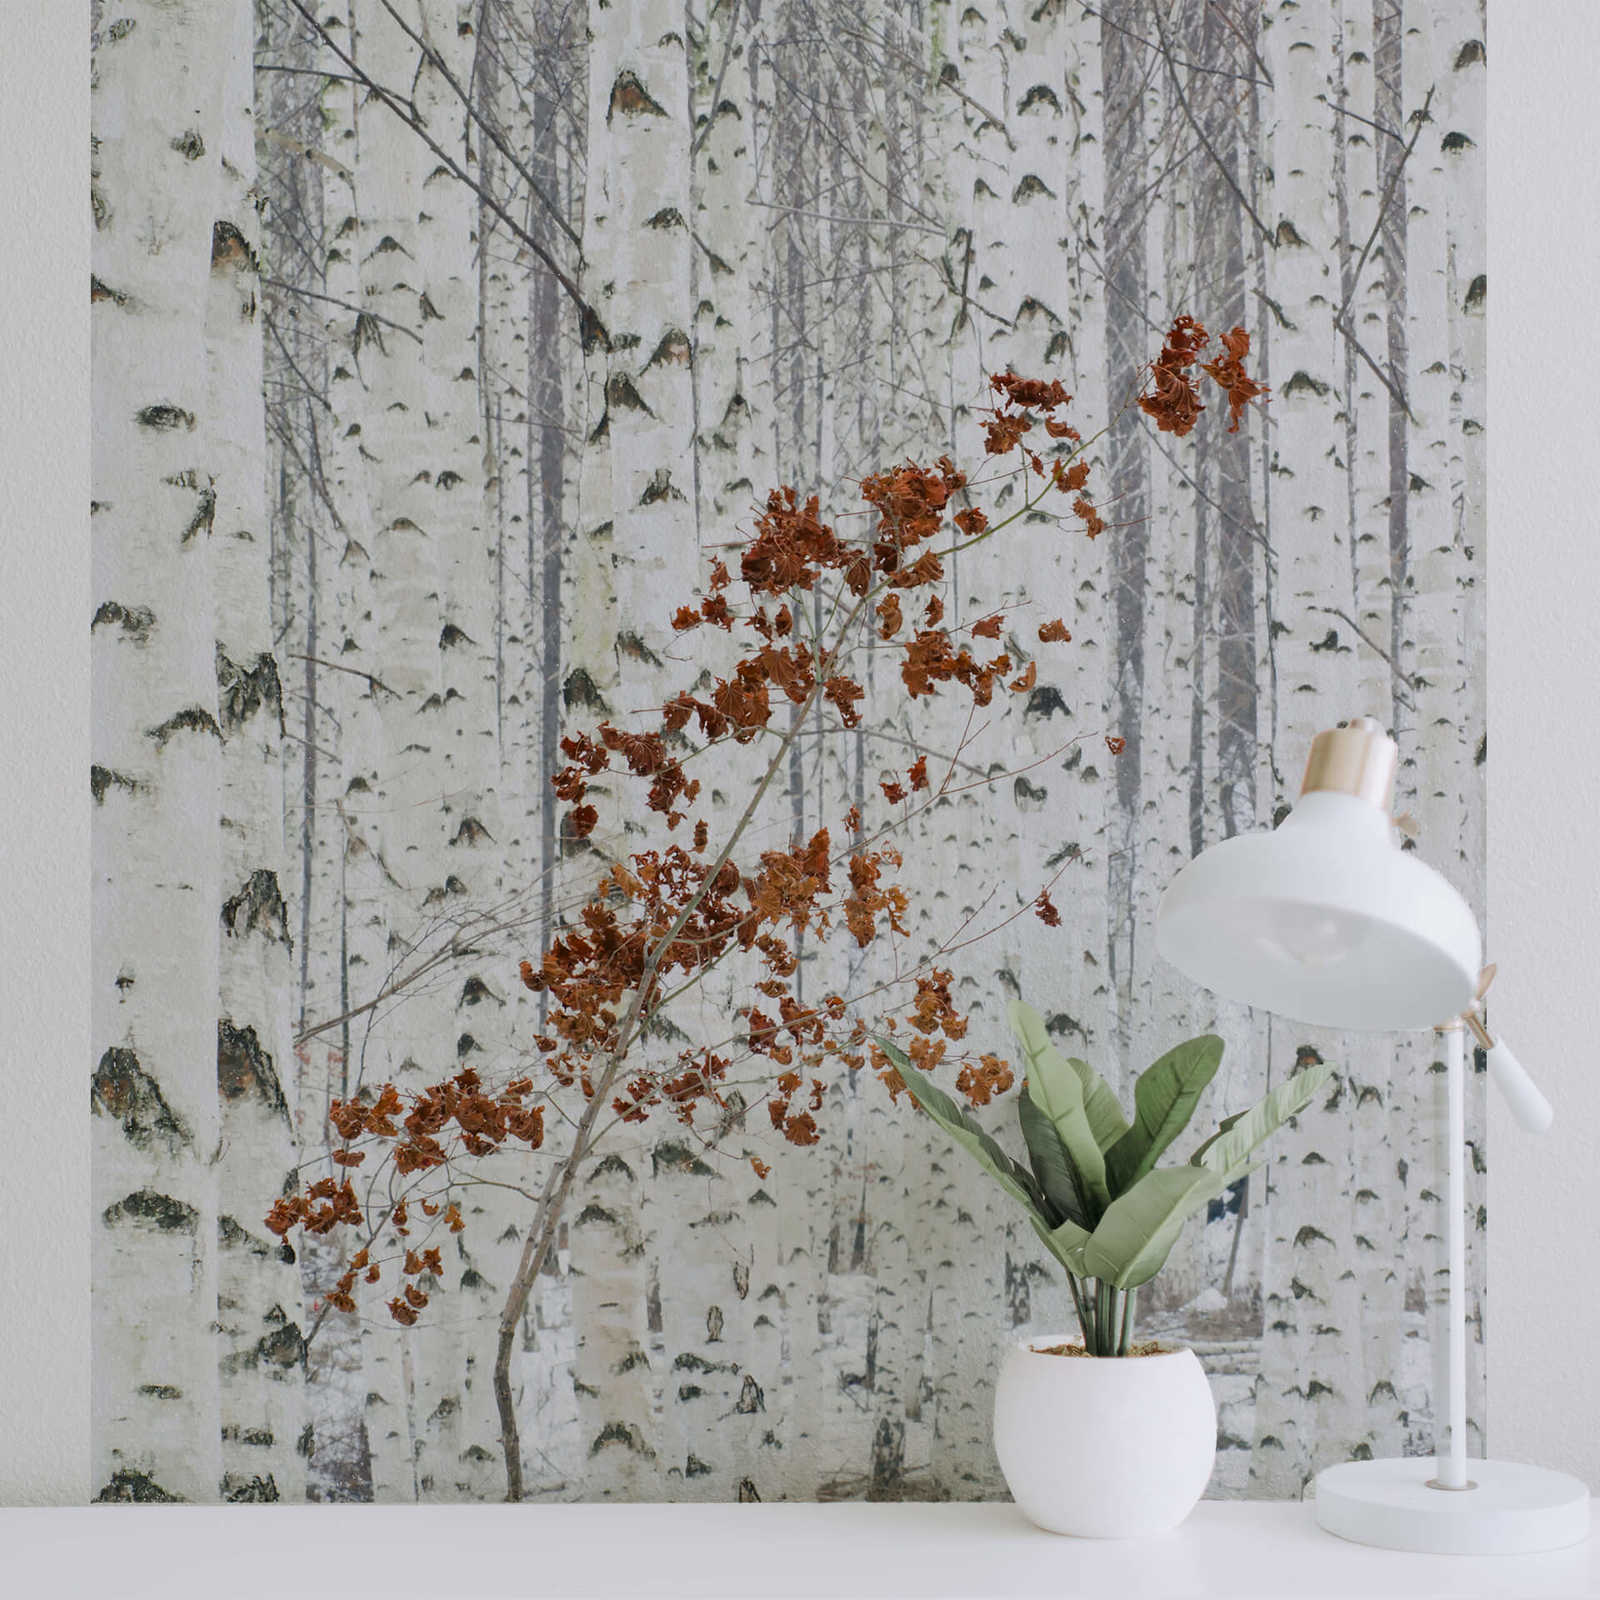             Fototapete Wald aus Birken – Weiß, Grau, Braun
        